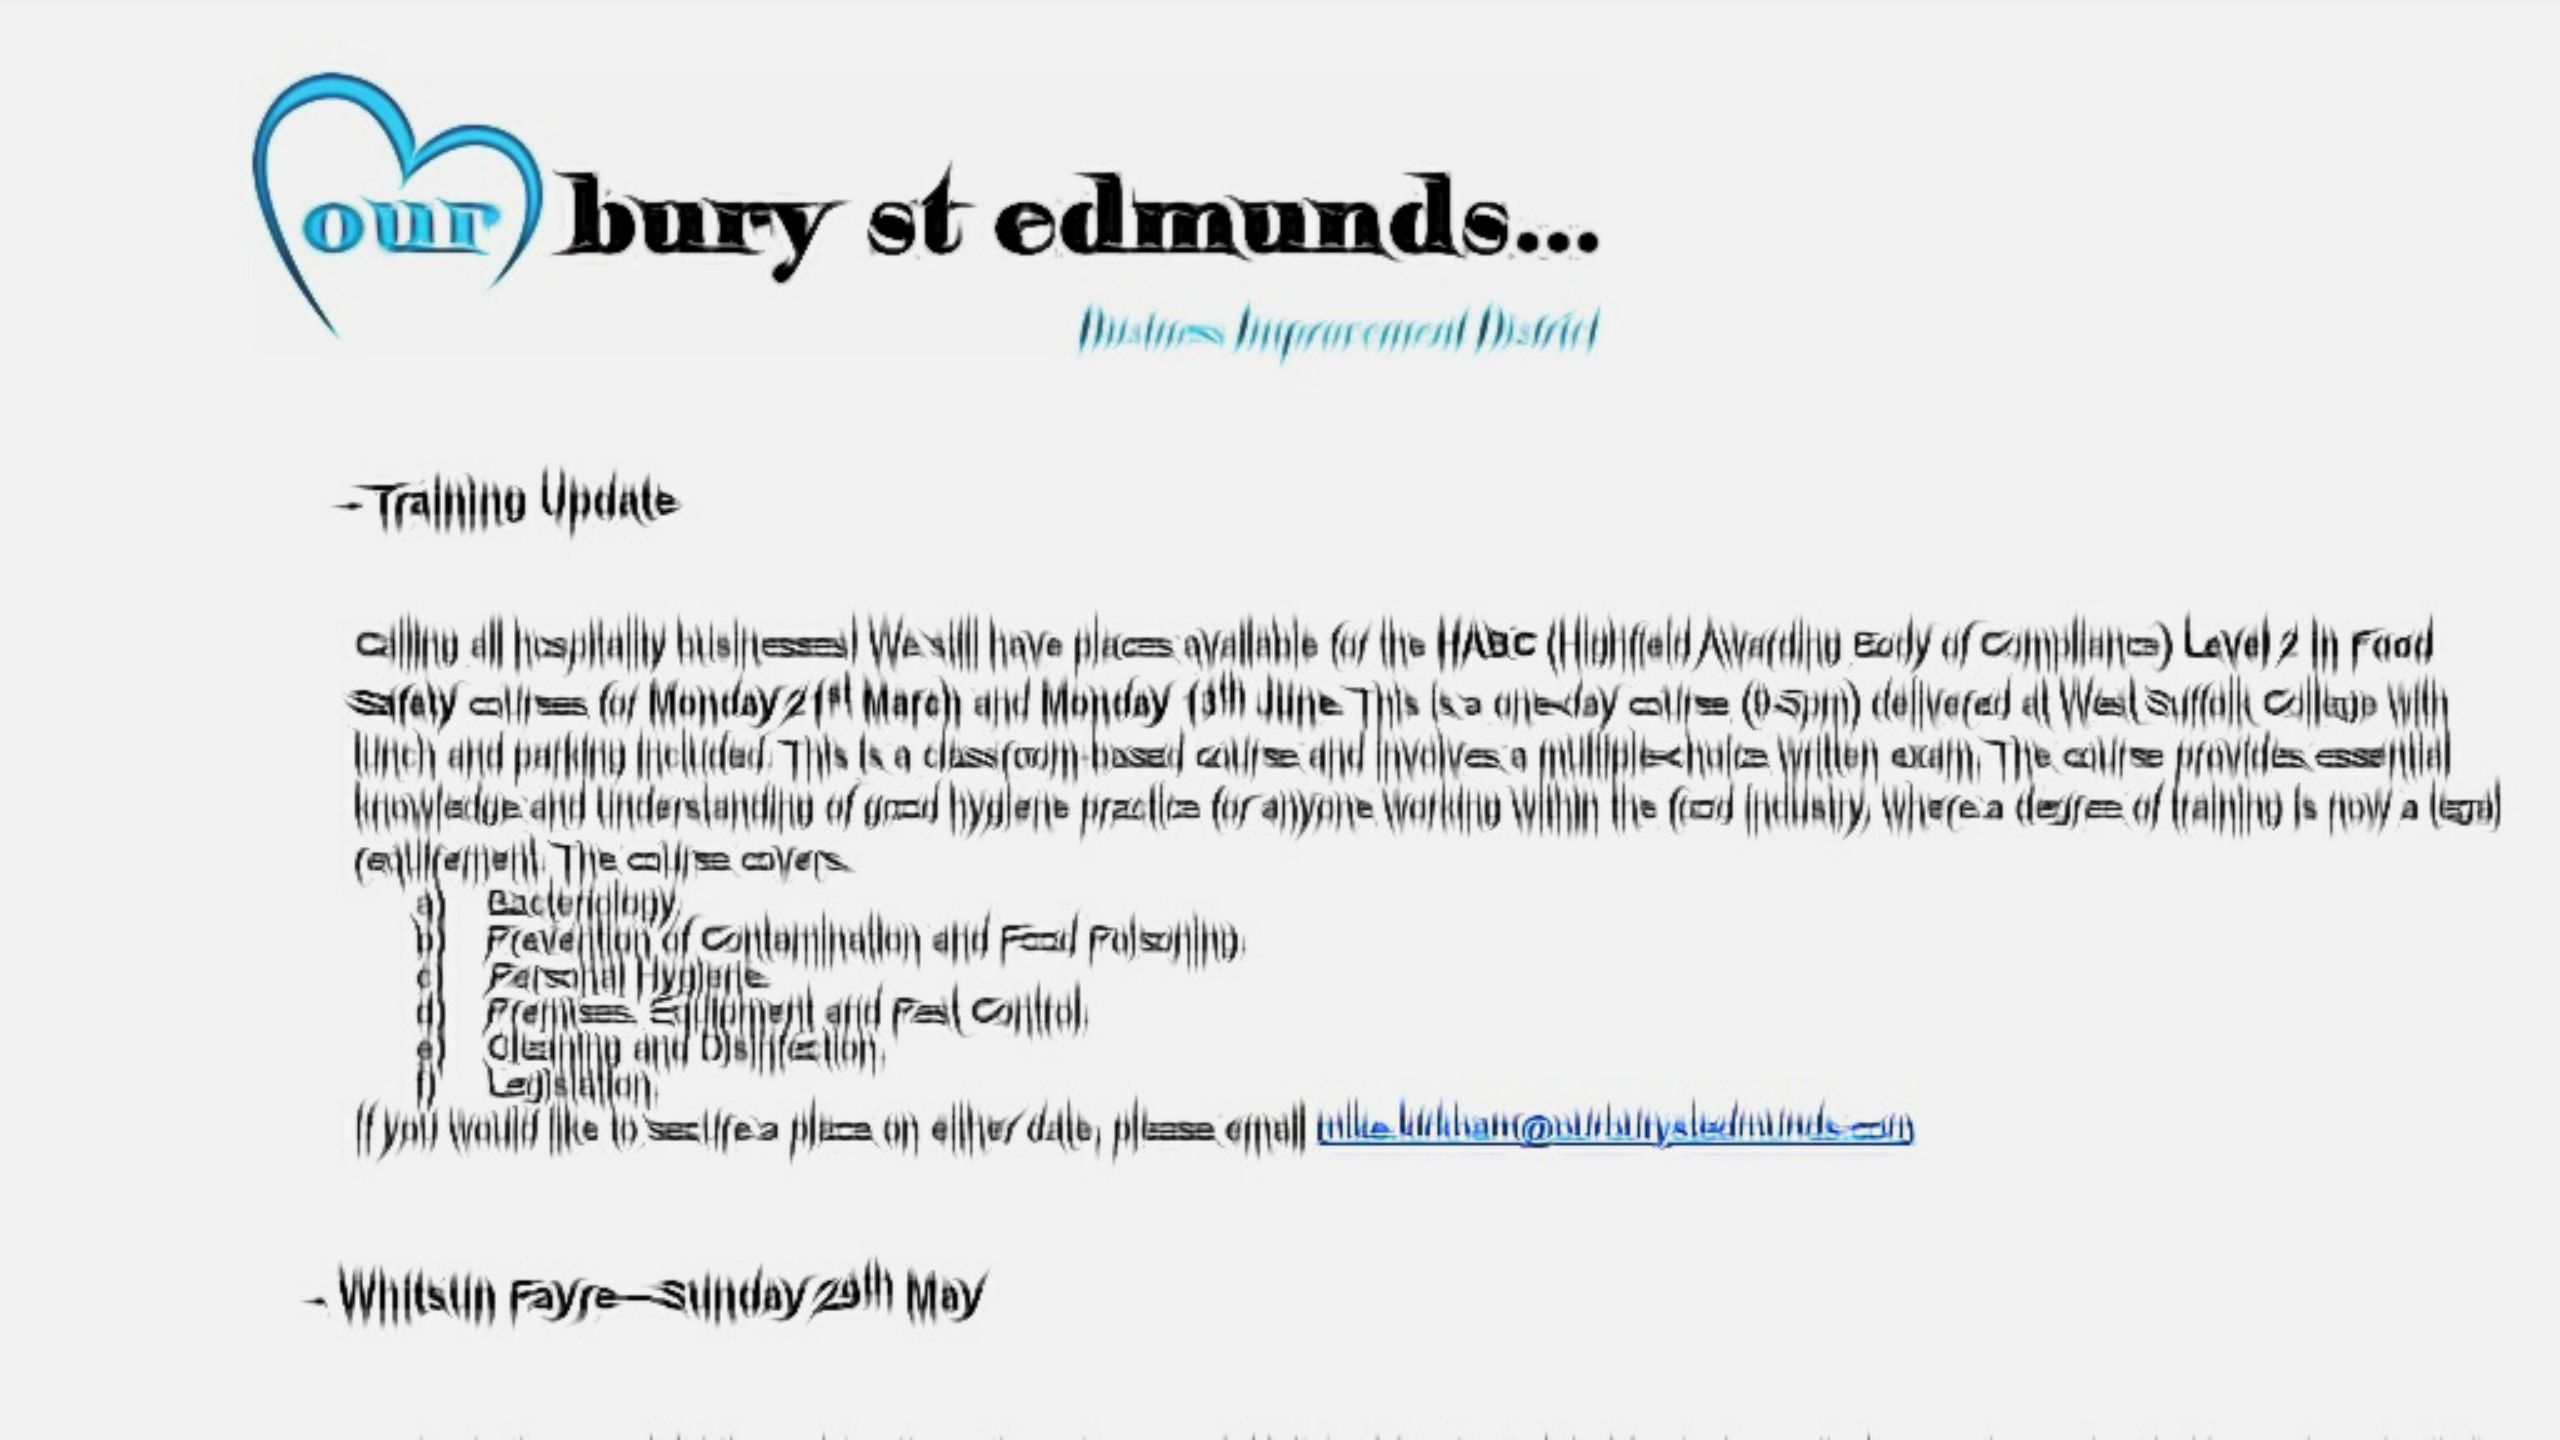 BID Our Bury St Edmunds